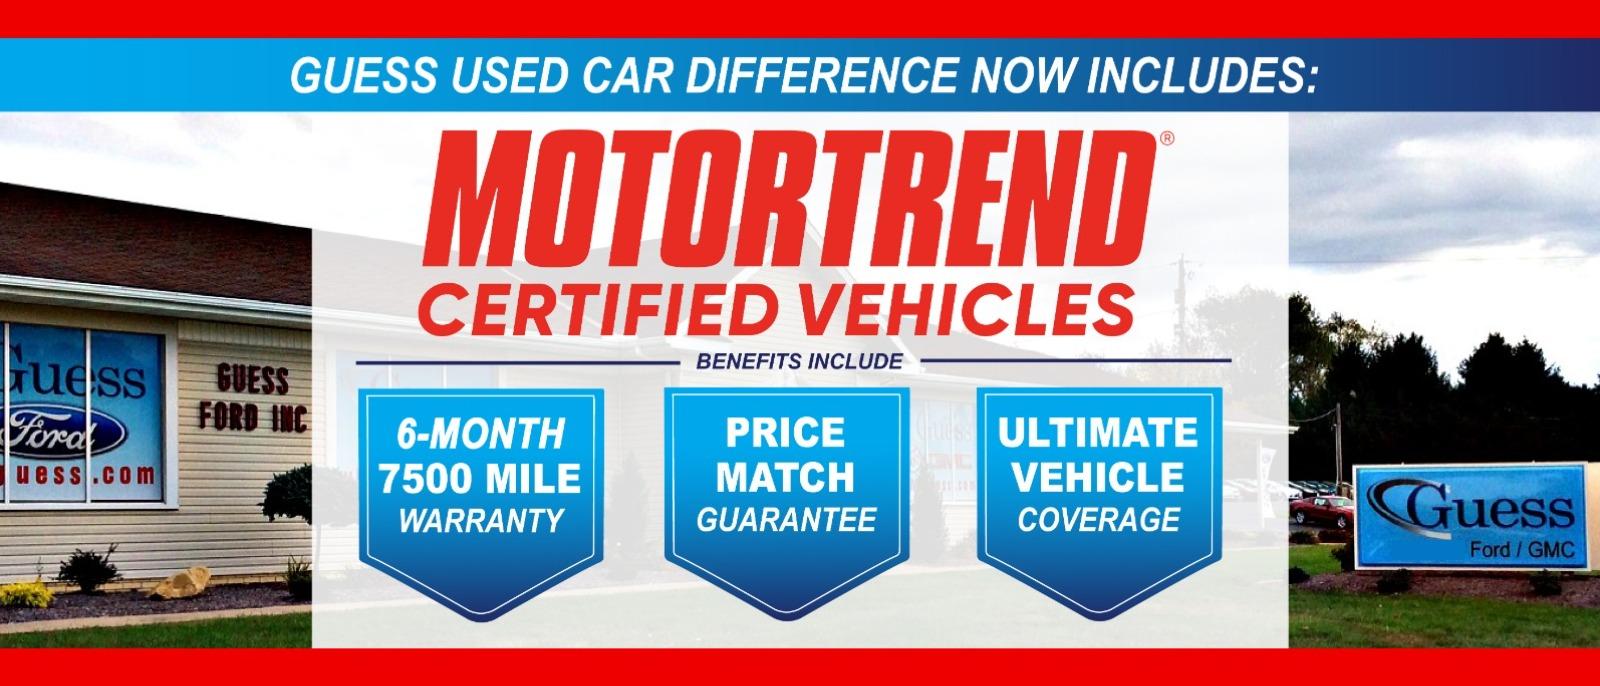 Motortrend certified